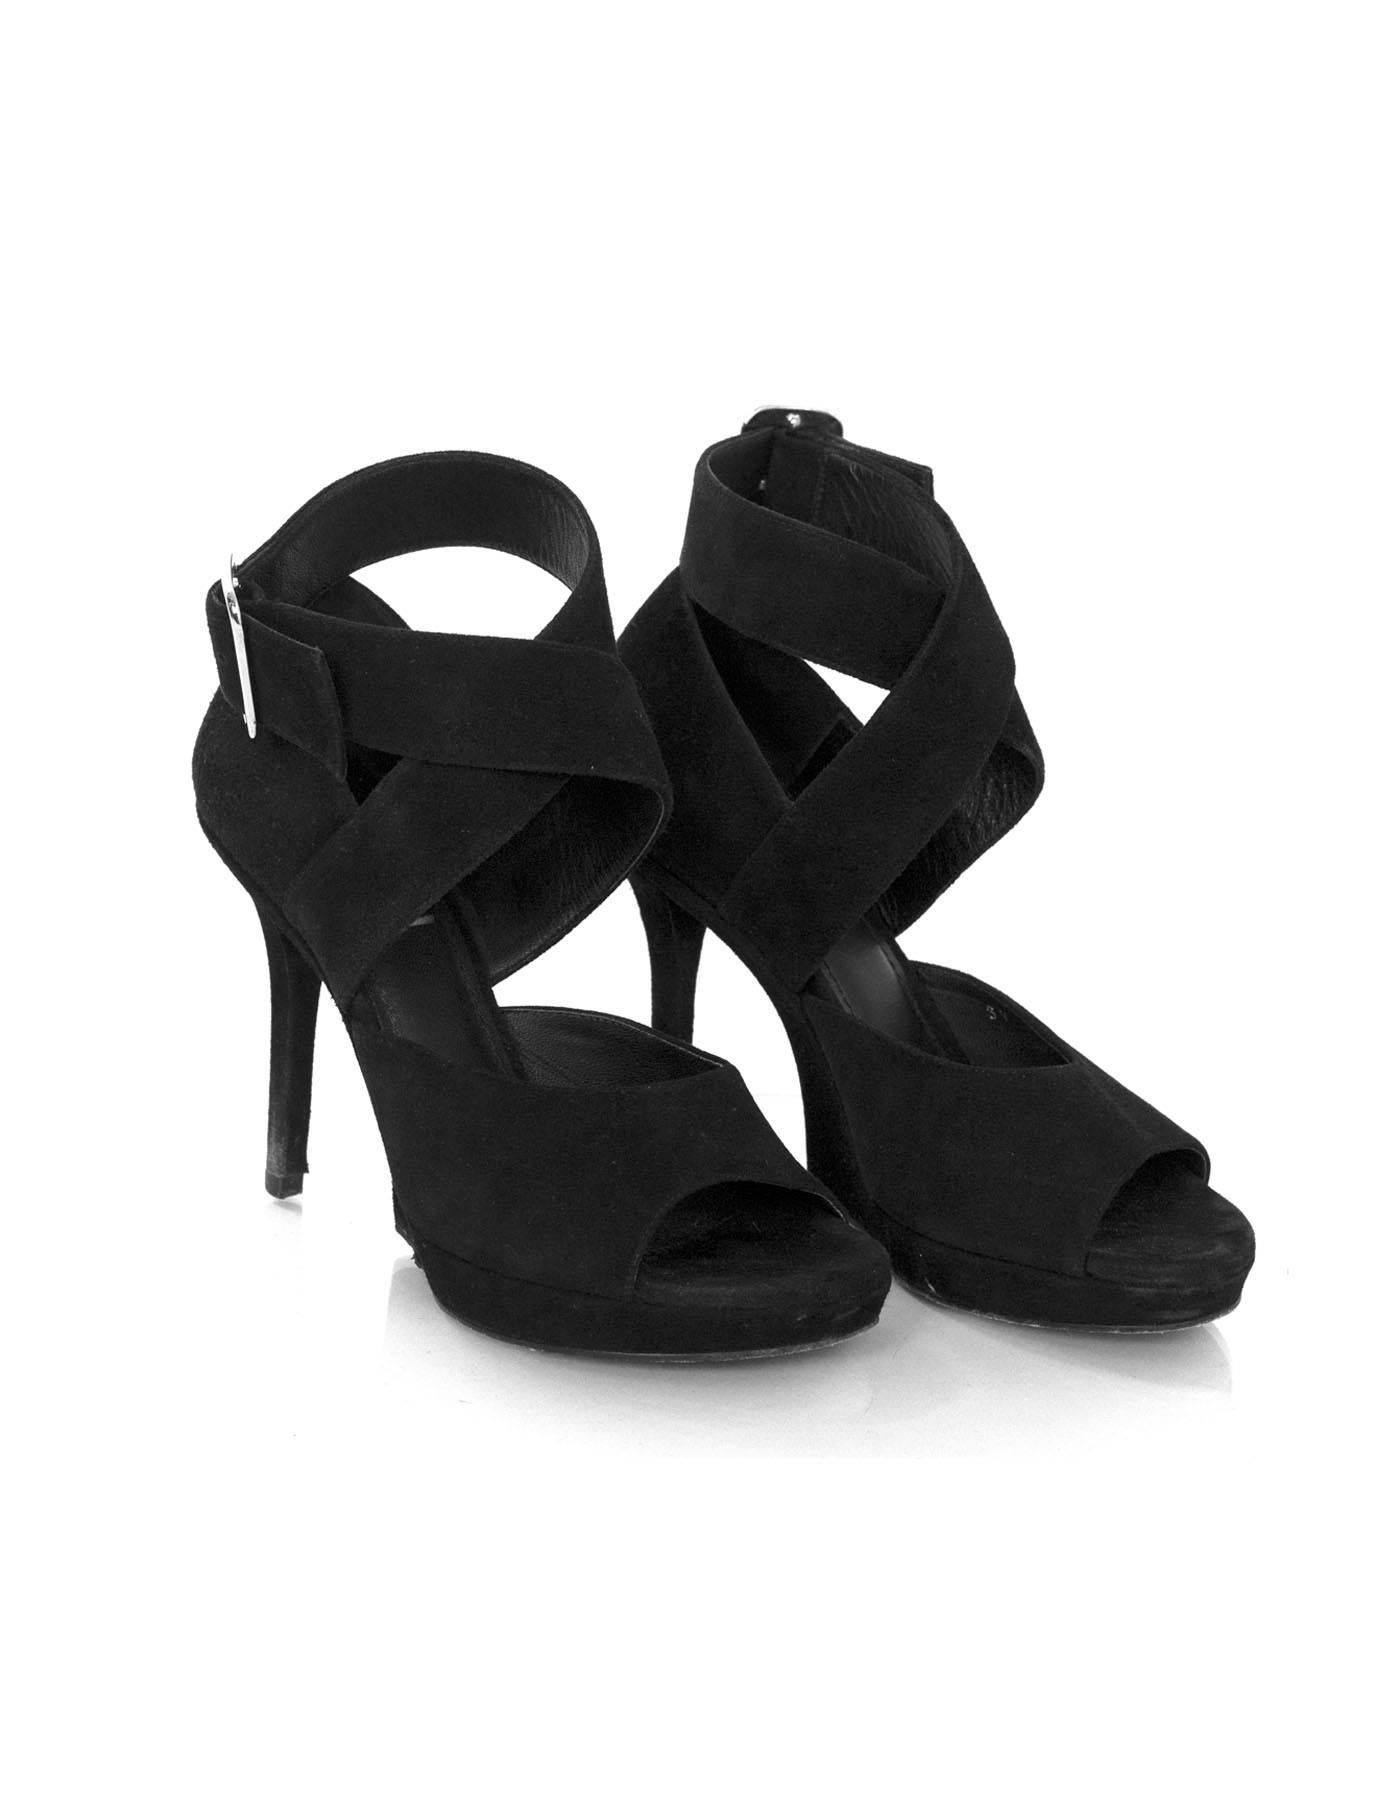 Yves Saint Laurent Black Suede Sandals Sz 35 1